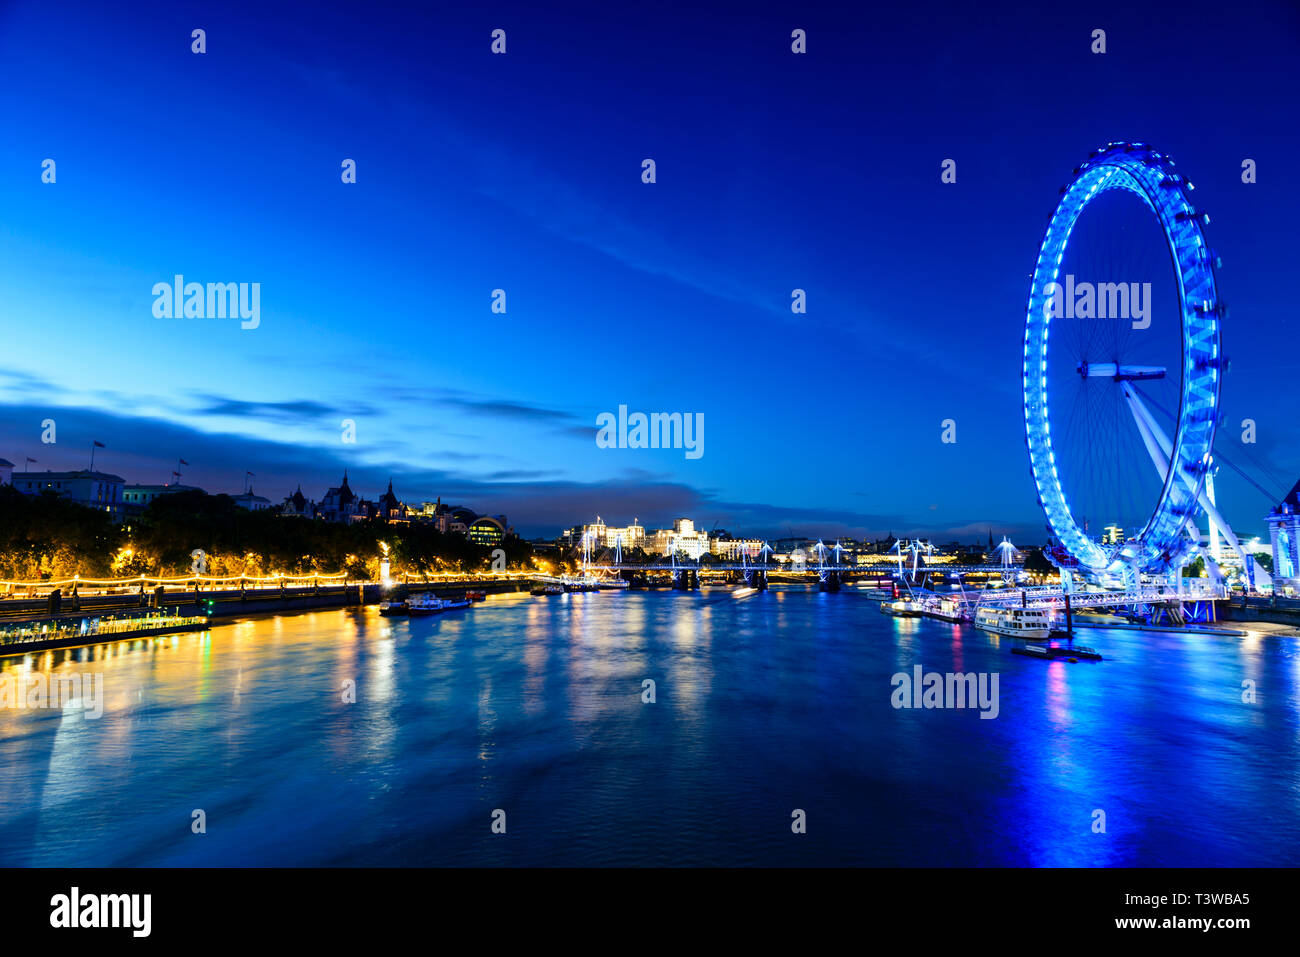 Mit Blick auf Flussfront London Eye, London, Vereinigtes Königreich Stockfoto